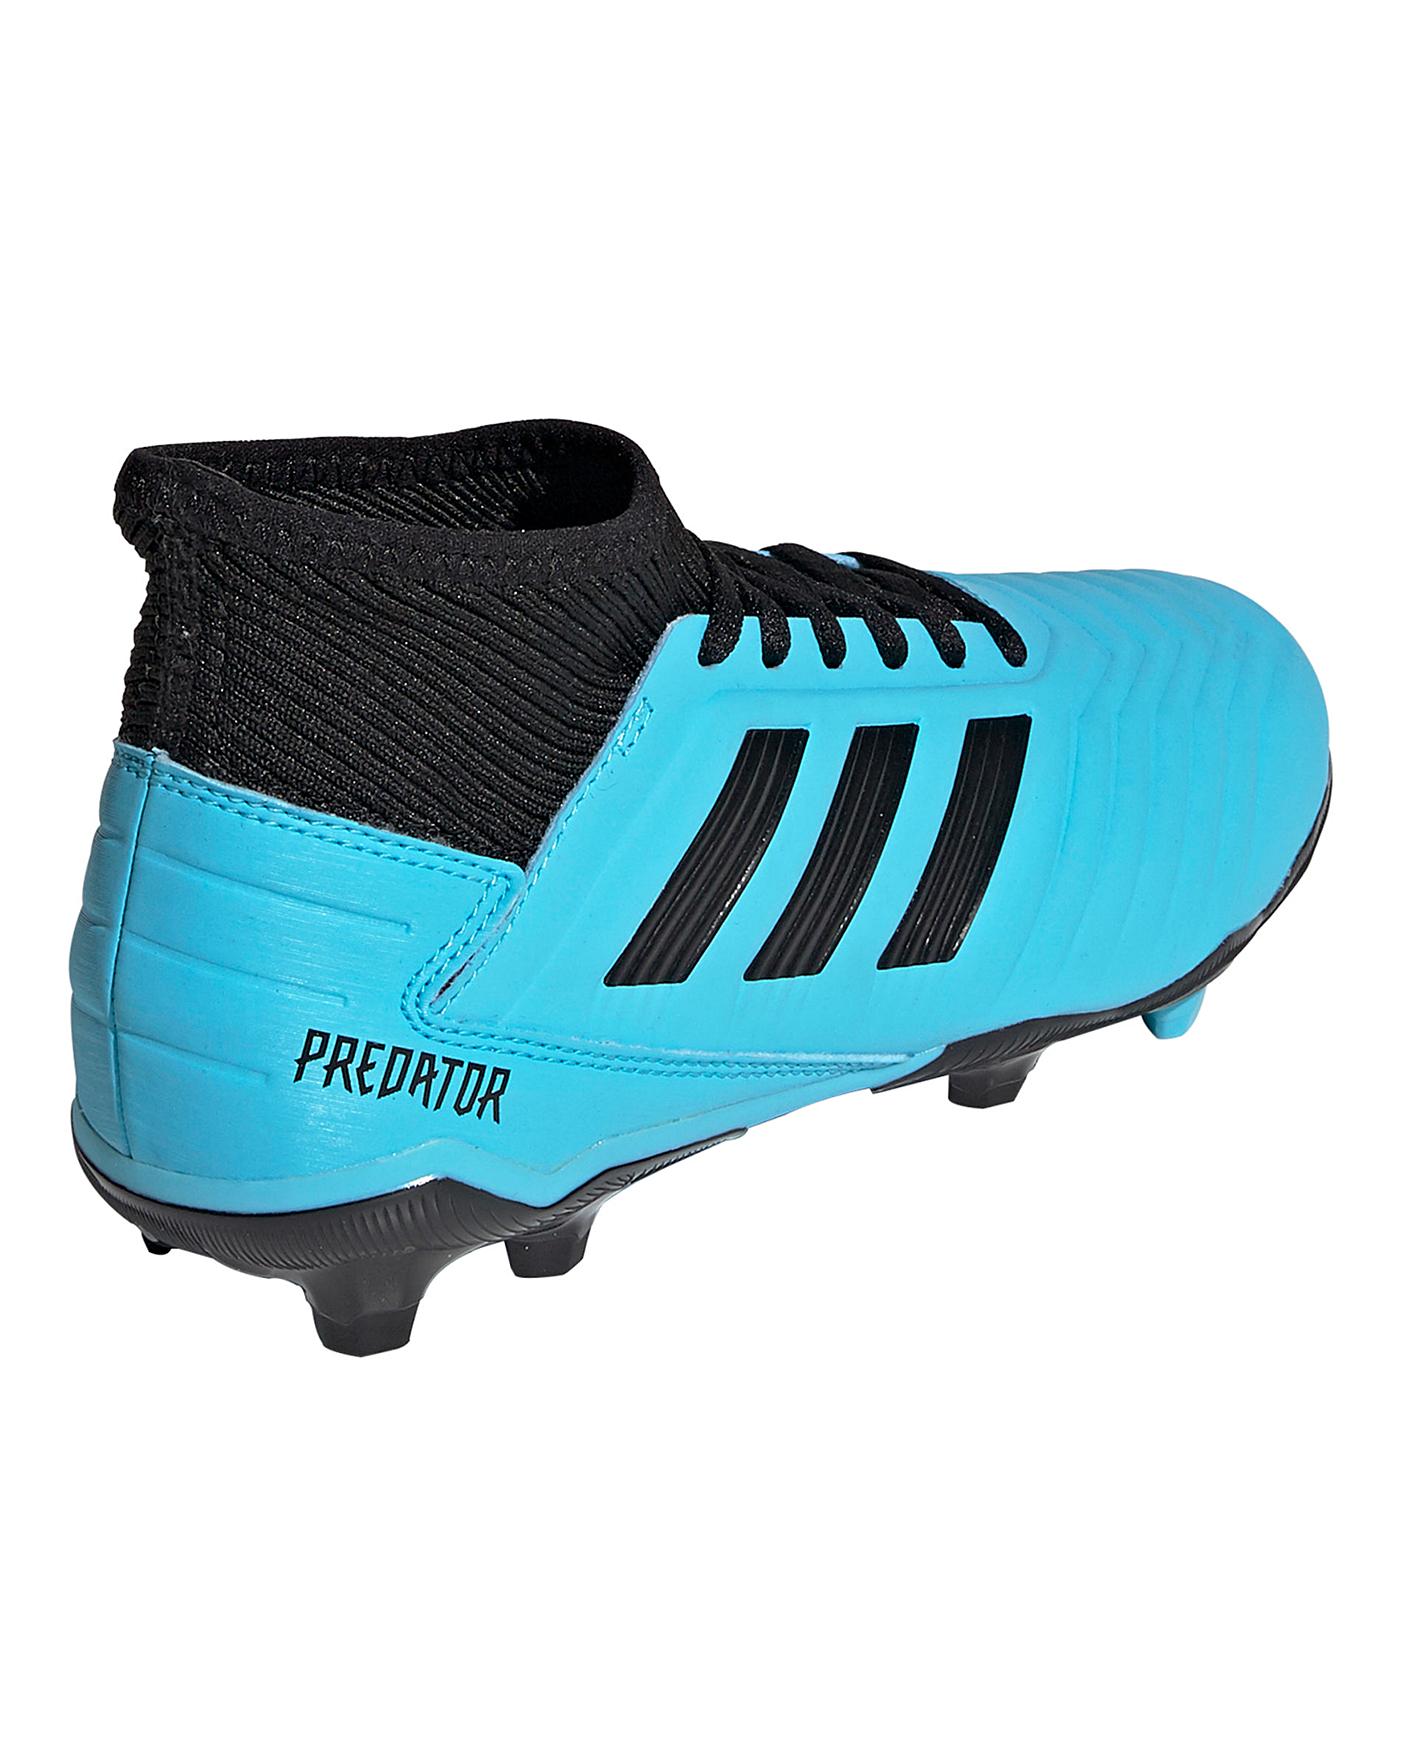 jd sports predator football boots